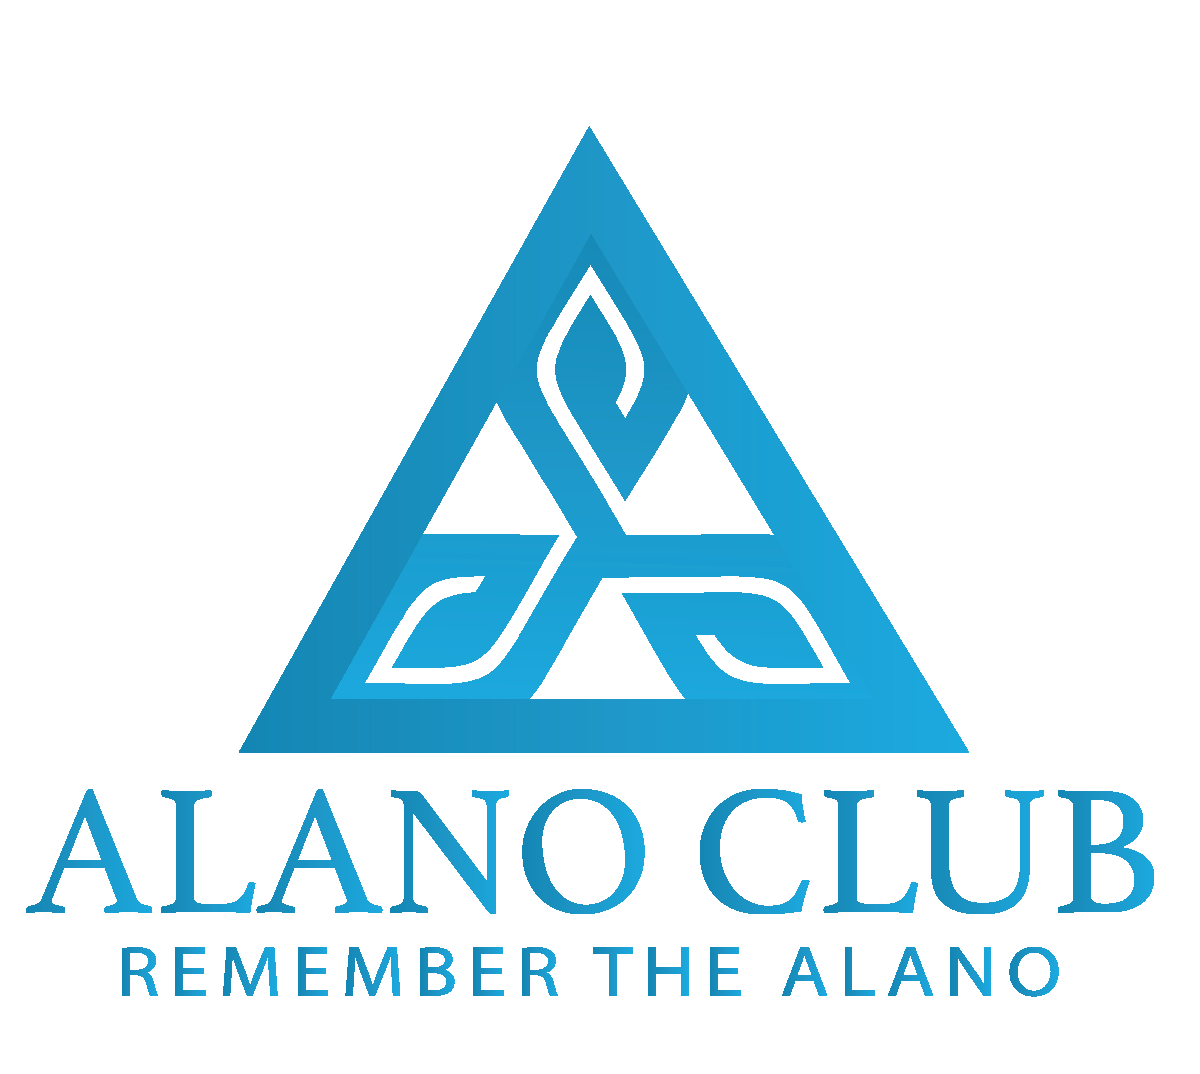 Alano Club